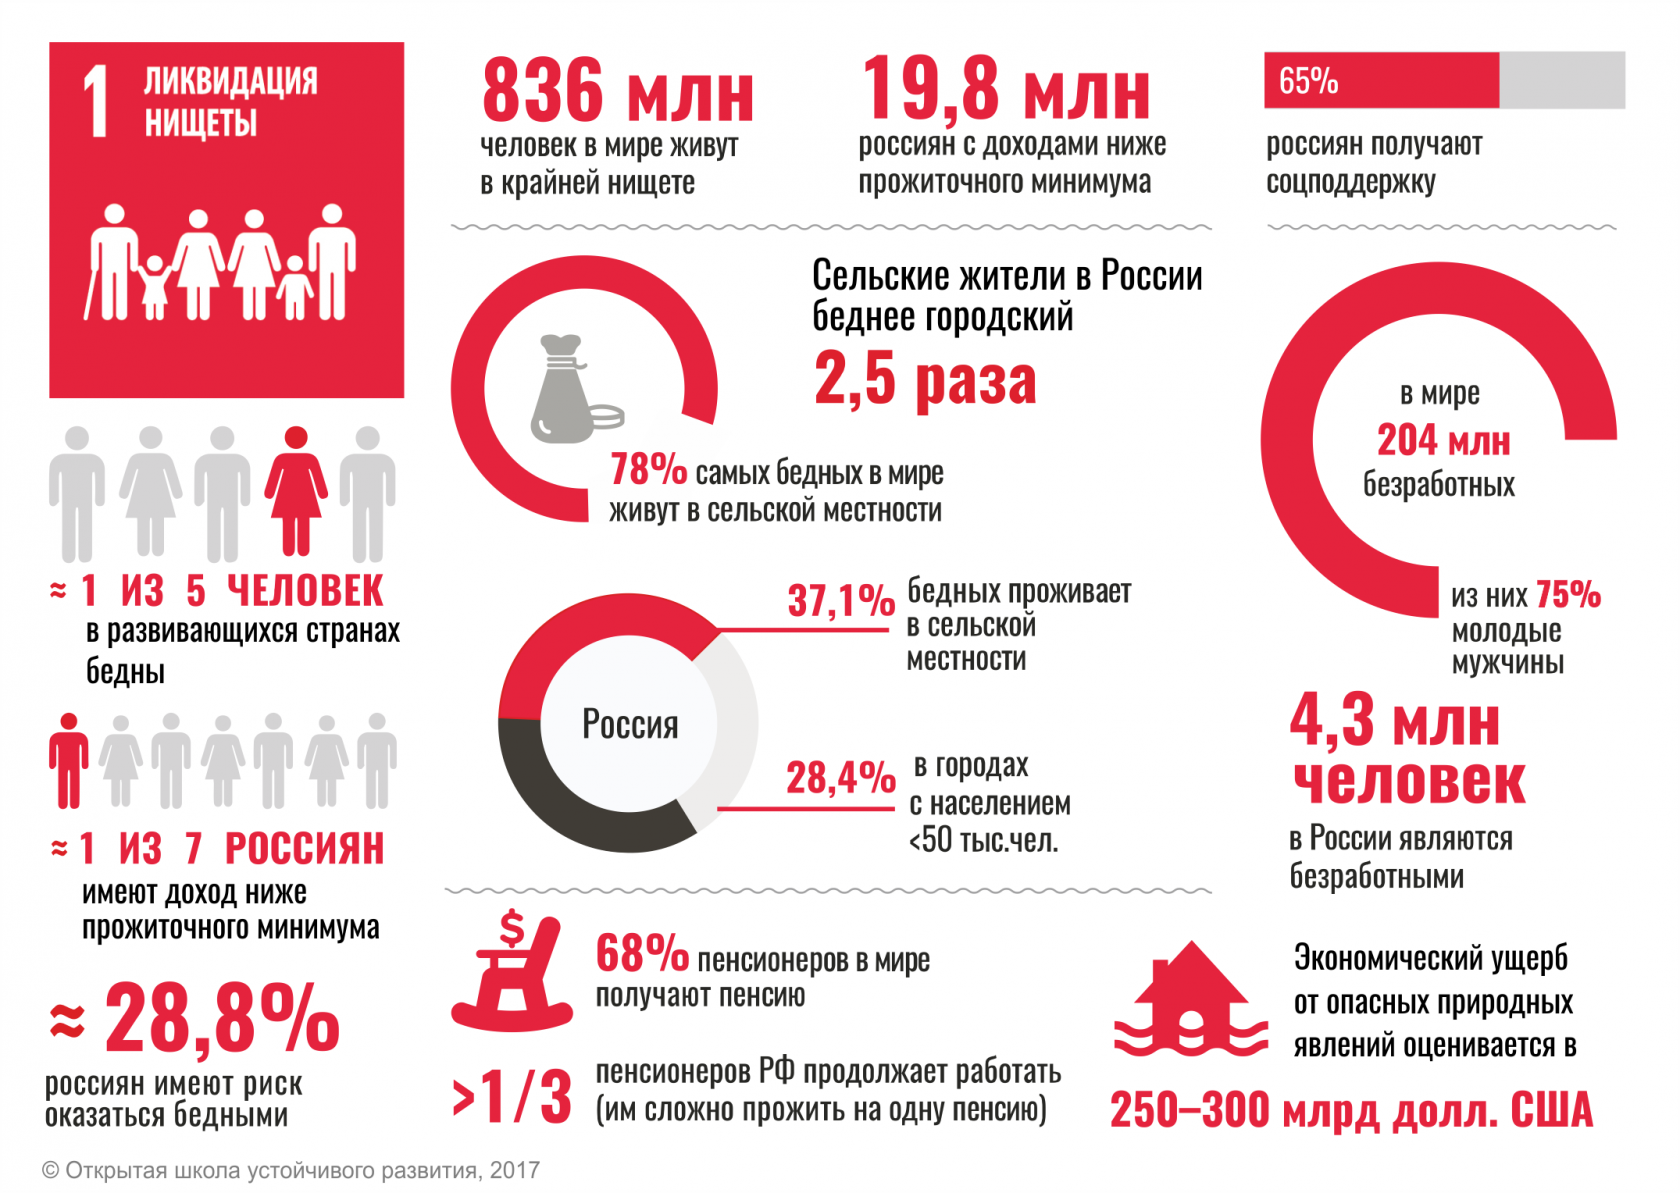 Бедный насколько. Ликвидация нищеты в России. Статистика бедности в мире. ЦУР цель 1: ликвидация нищеты. Структура бедности в России.